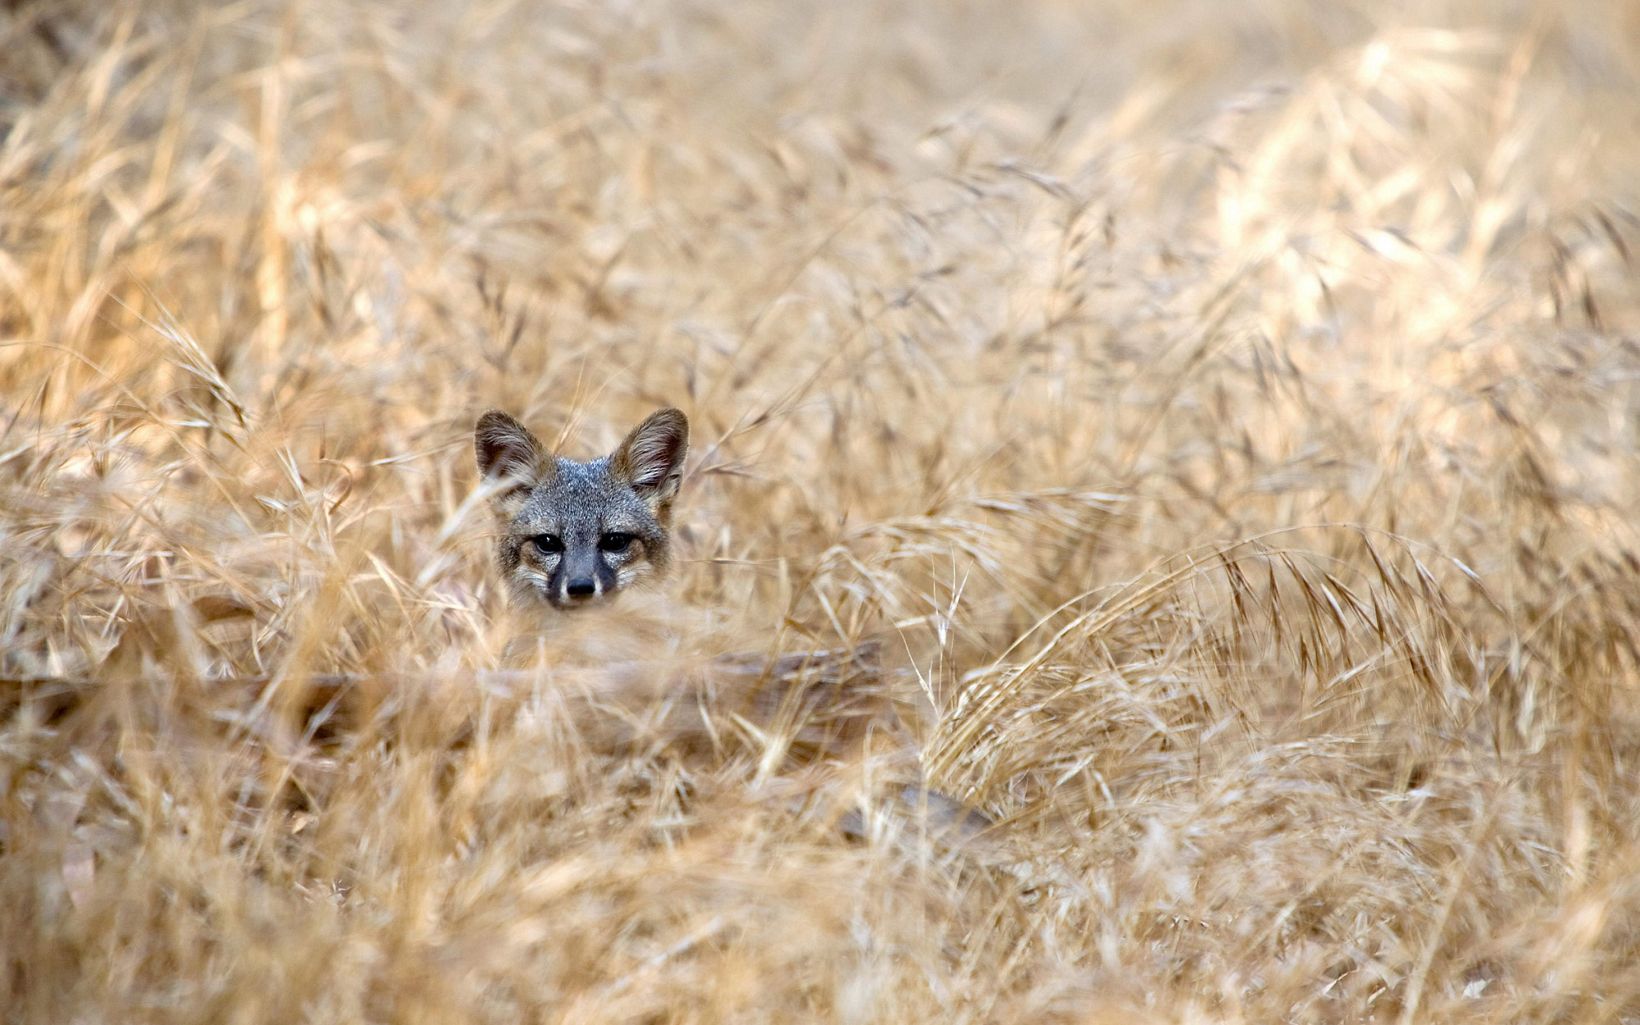 Santa Cruz island fox in the grass © Ian Shive